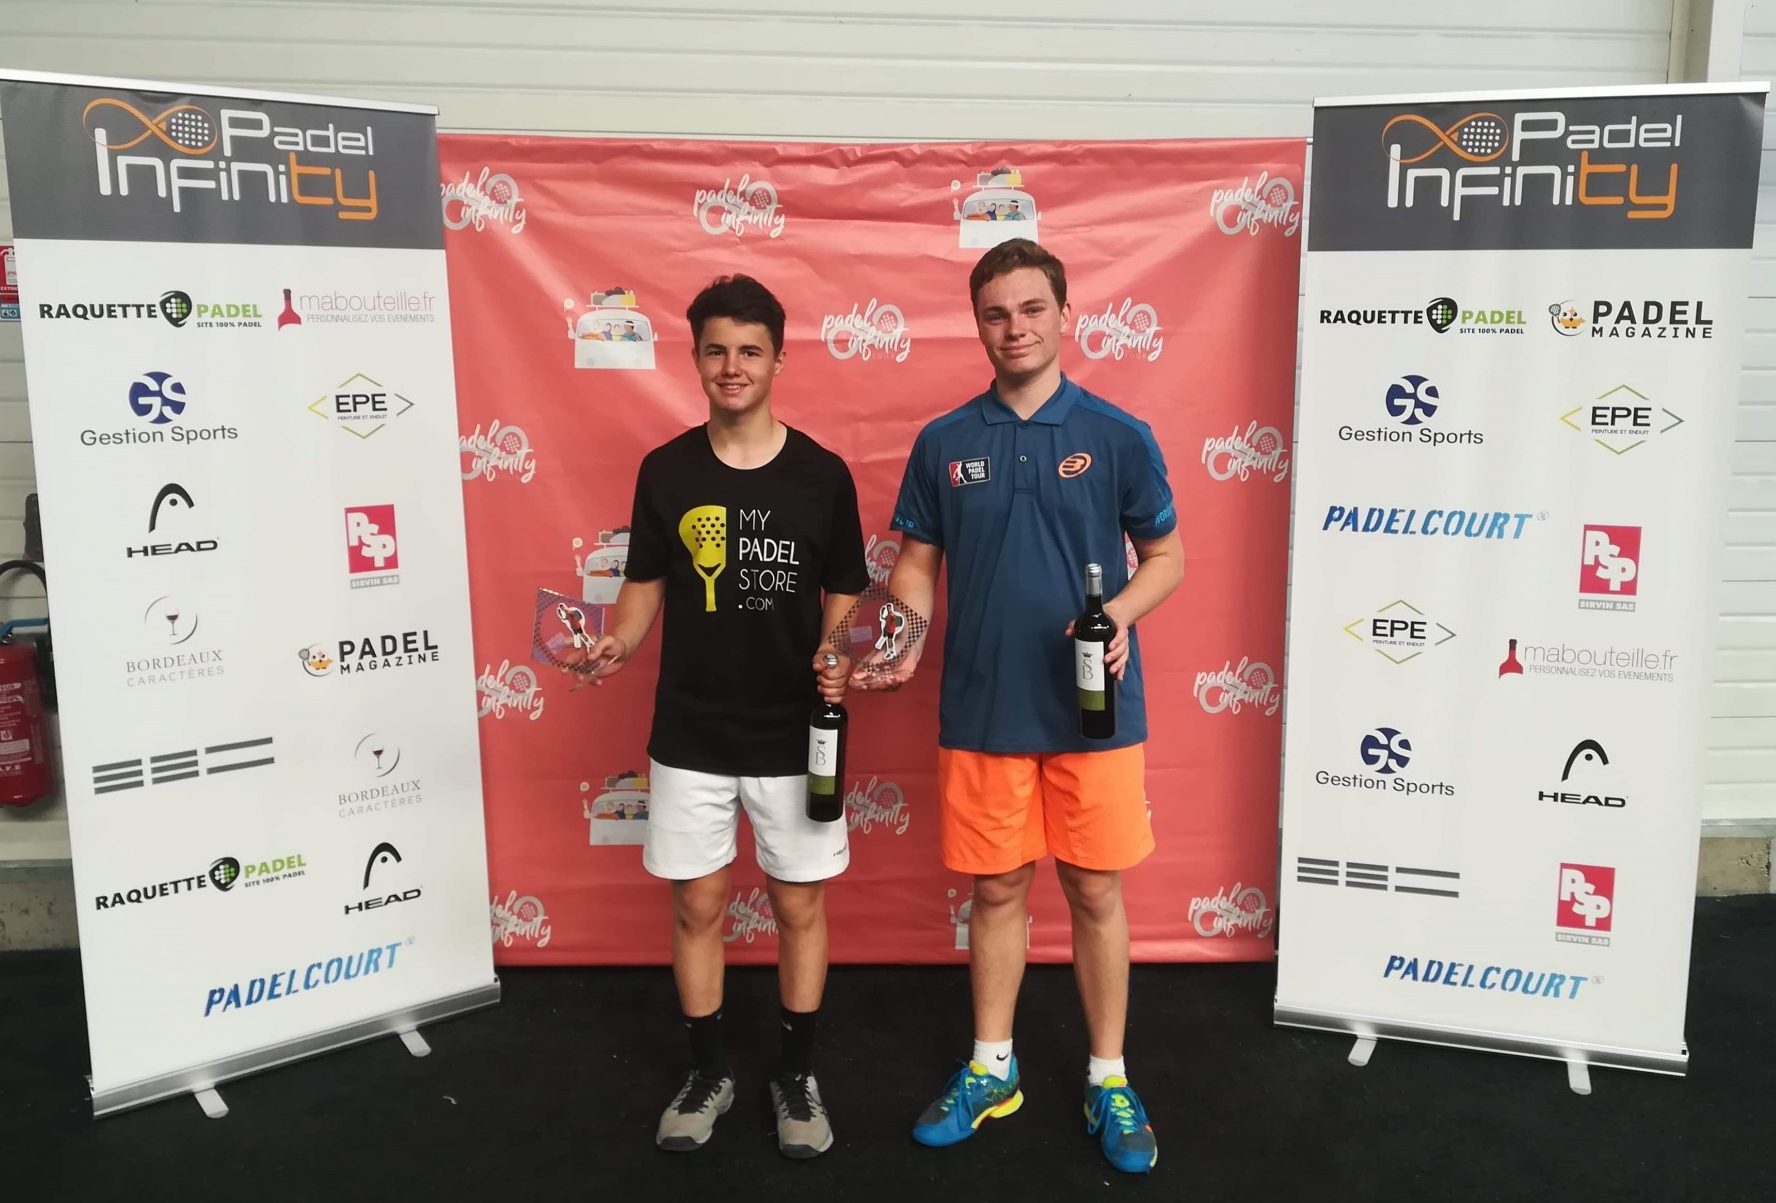 Dotte / Lorenzo : Les plus jeunes vainqueurs de padel dans un Open homologué